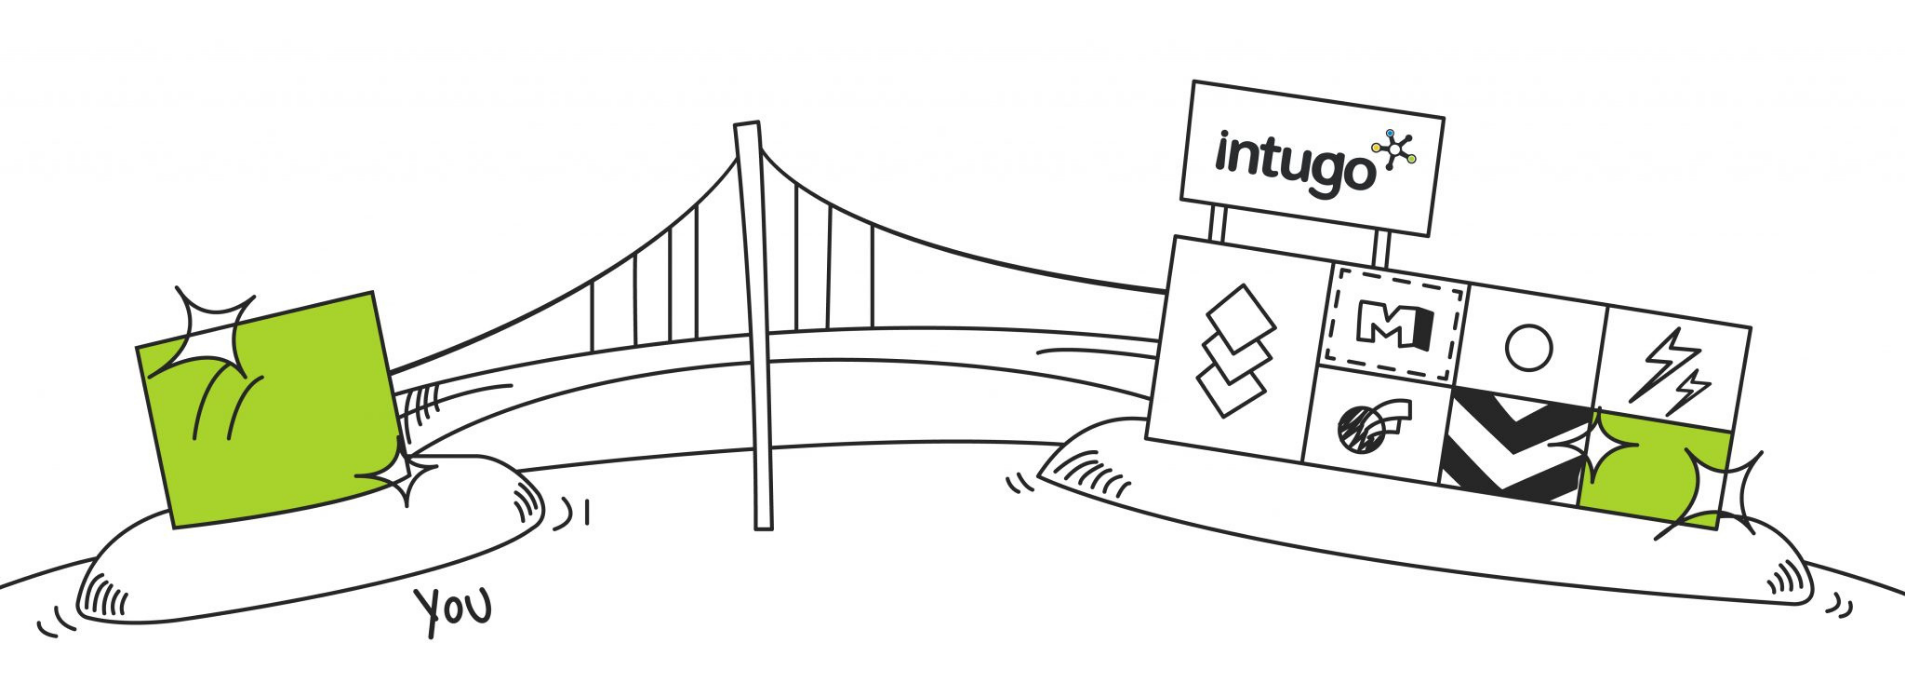 Bridge Intugo